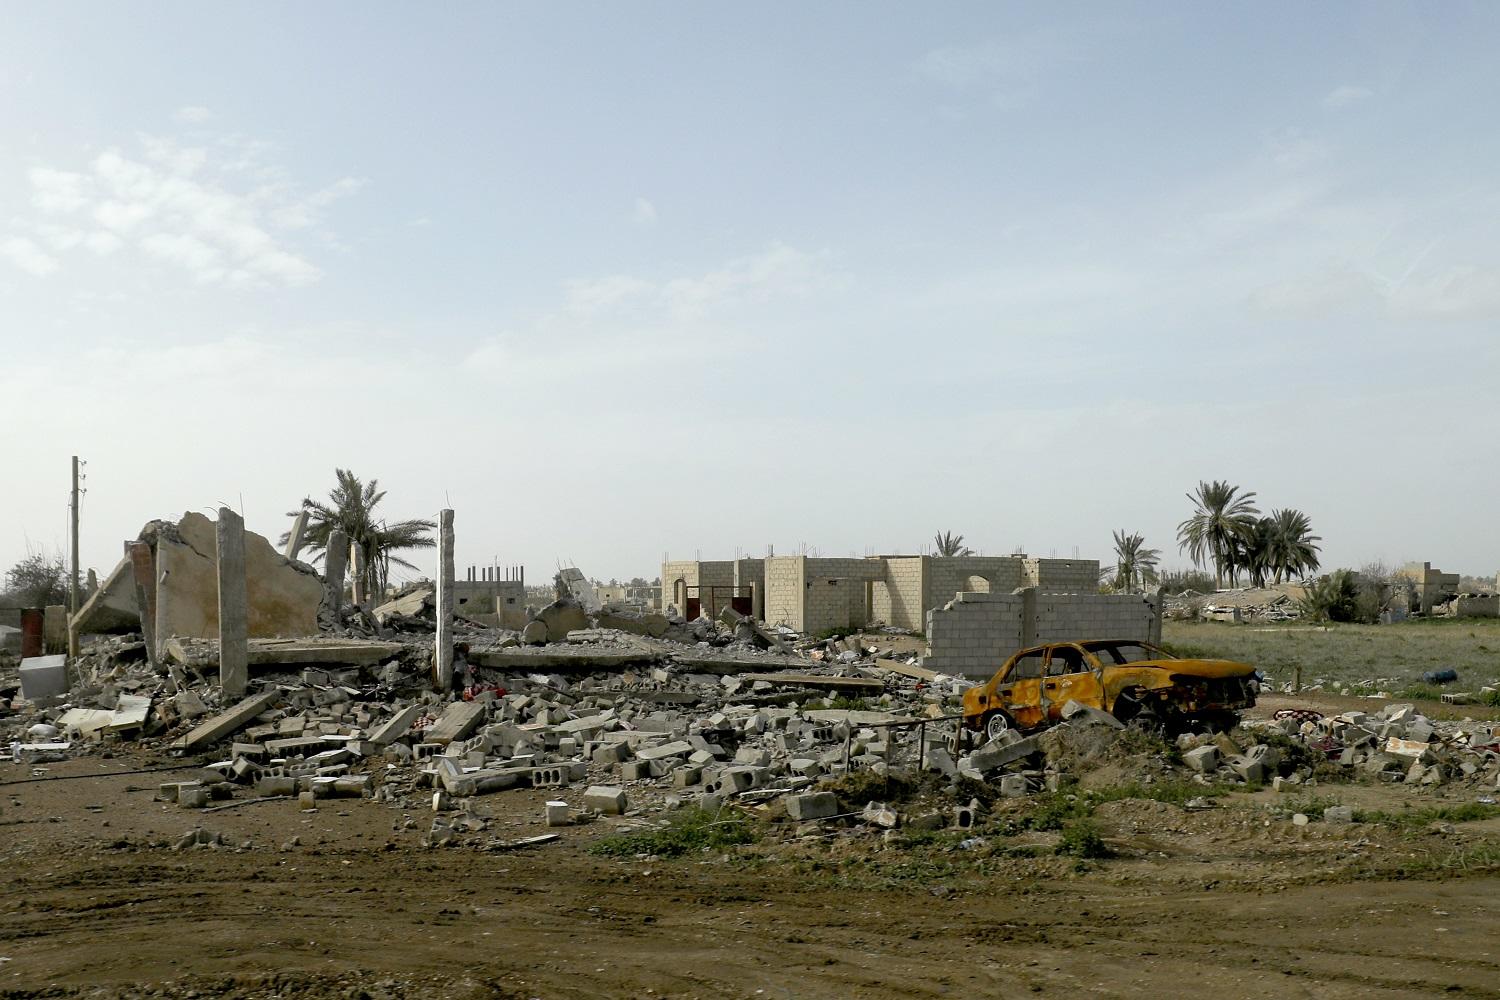  أشجار ودمار في باغوز بمحافظة دير الزور. 16 فبراير 2019/ أ ف ب